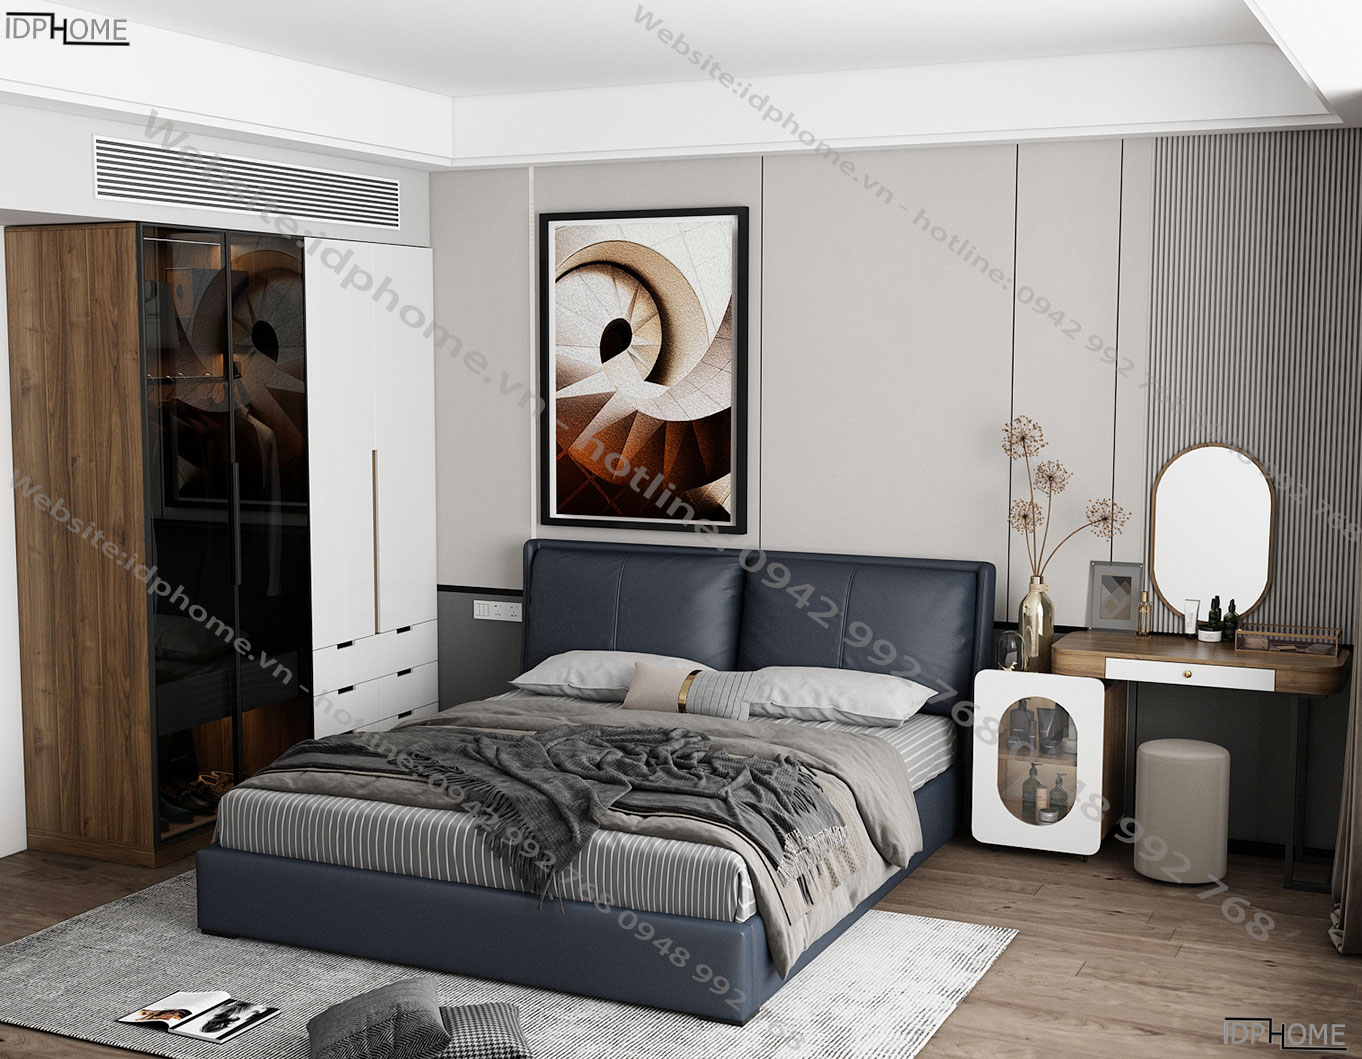 10+ mẫu thiết kế nội thất phòng ngủ hiện đại